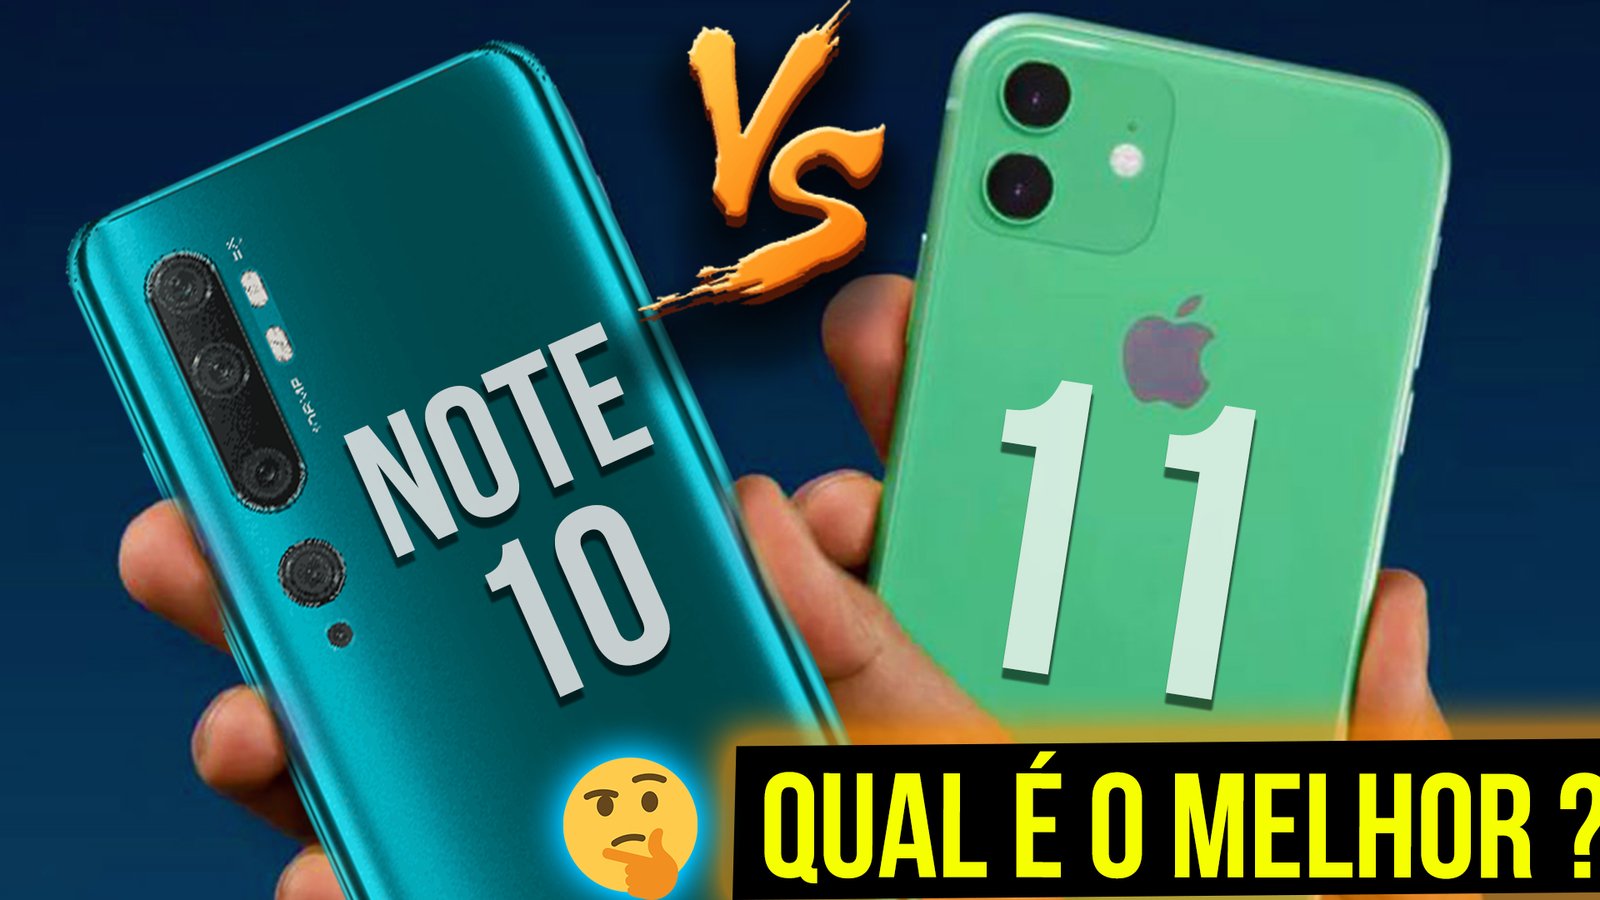 Mi note 10 vs Iphone 11